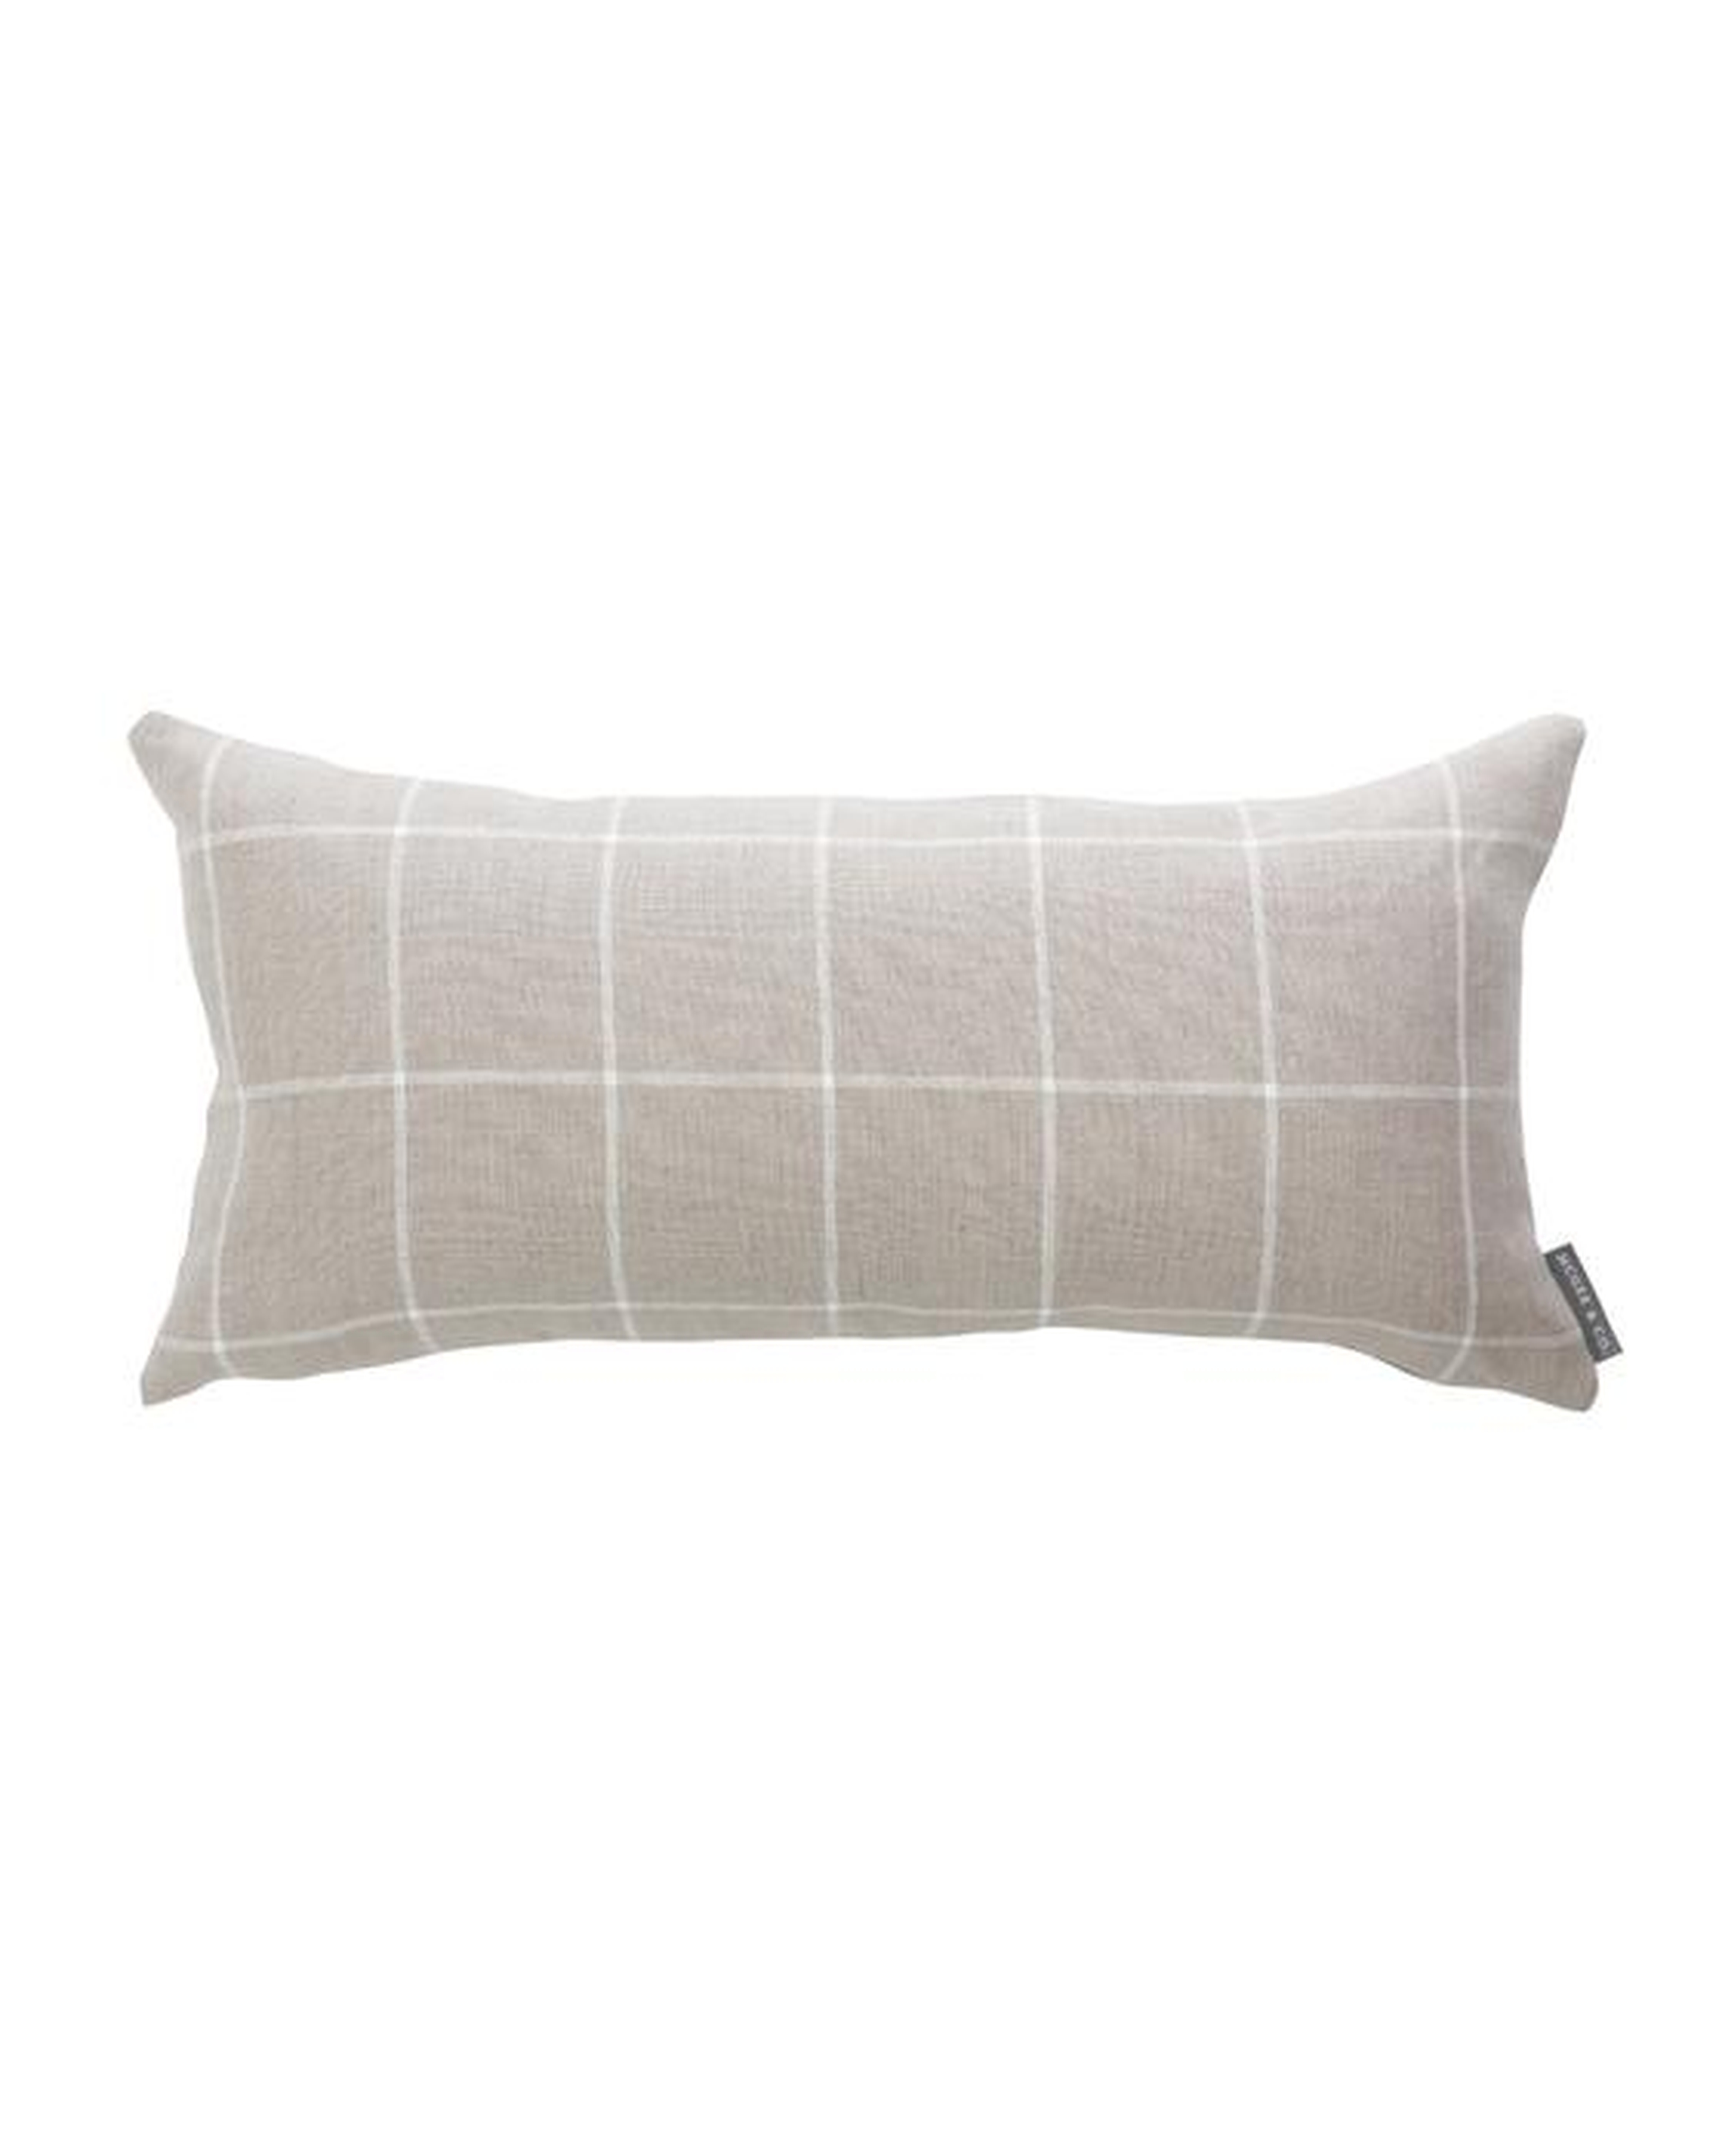 Taft Lumbar Pillow Cover, 12x24 - McGee & Co.